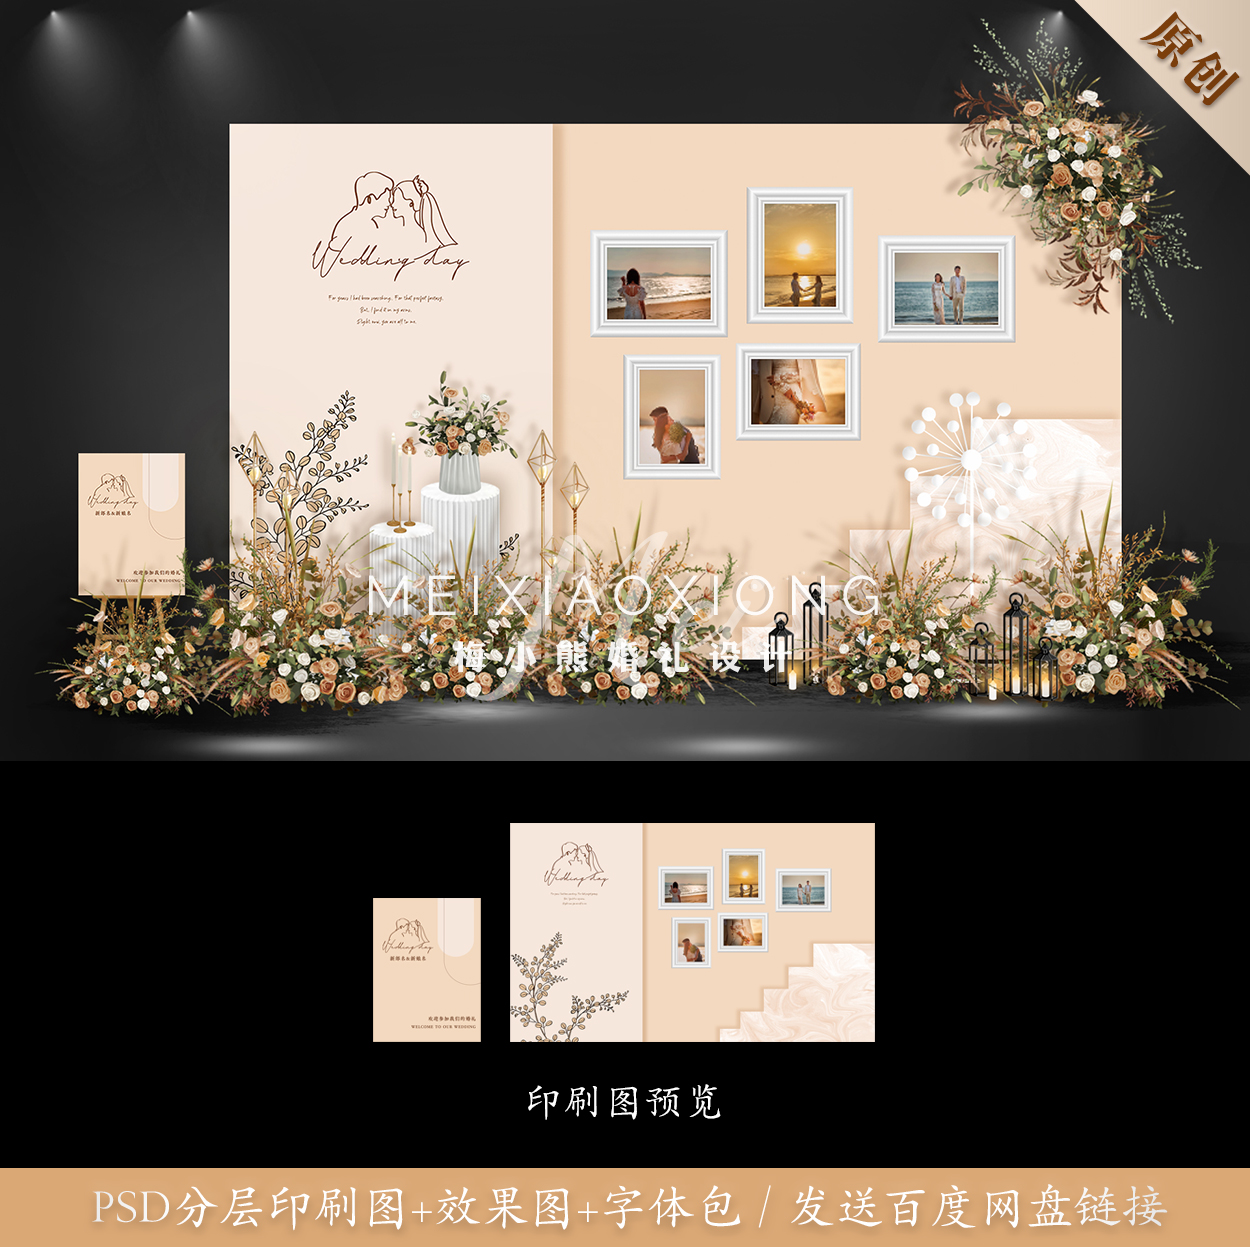 香槟色韩式婚礼效果图 迎宾区照片墙背景板设计素材模板PSD源文件